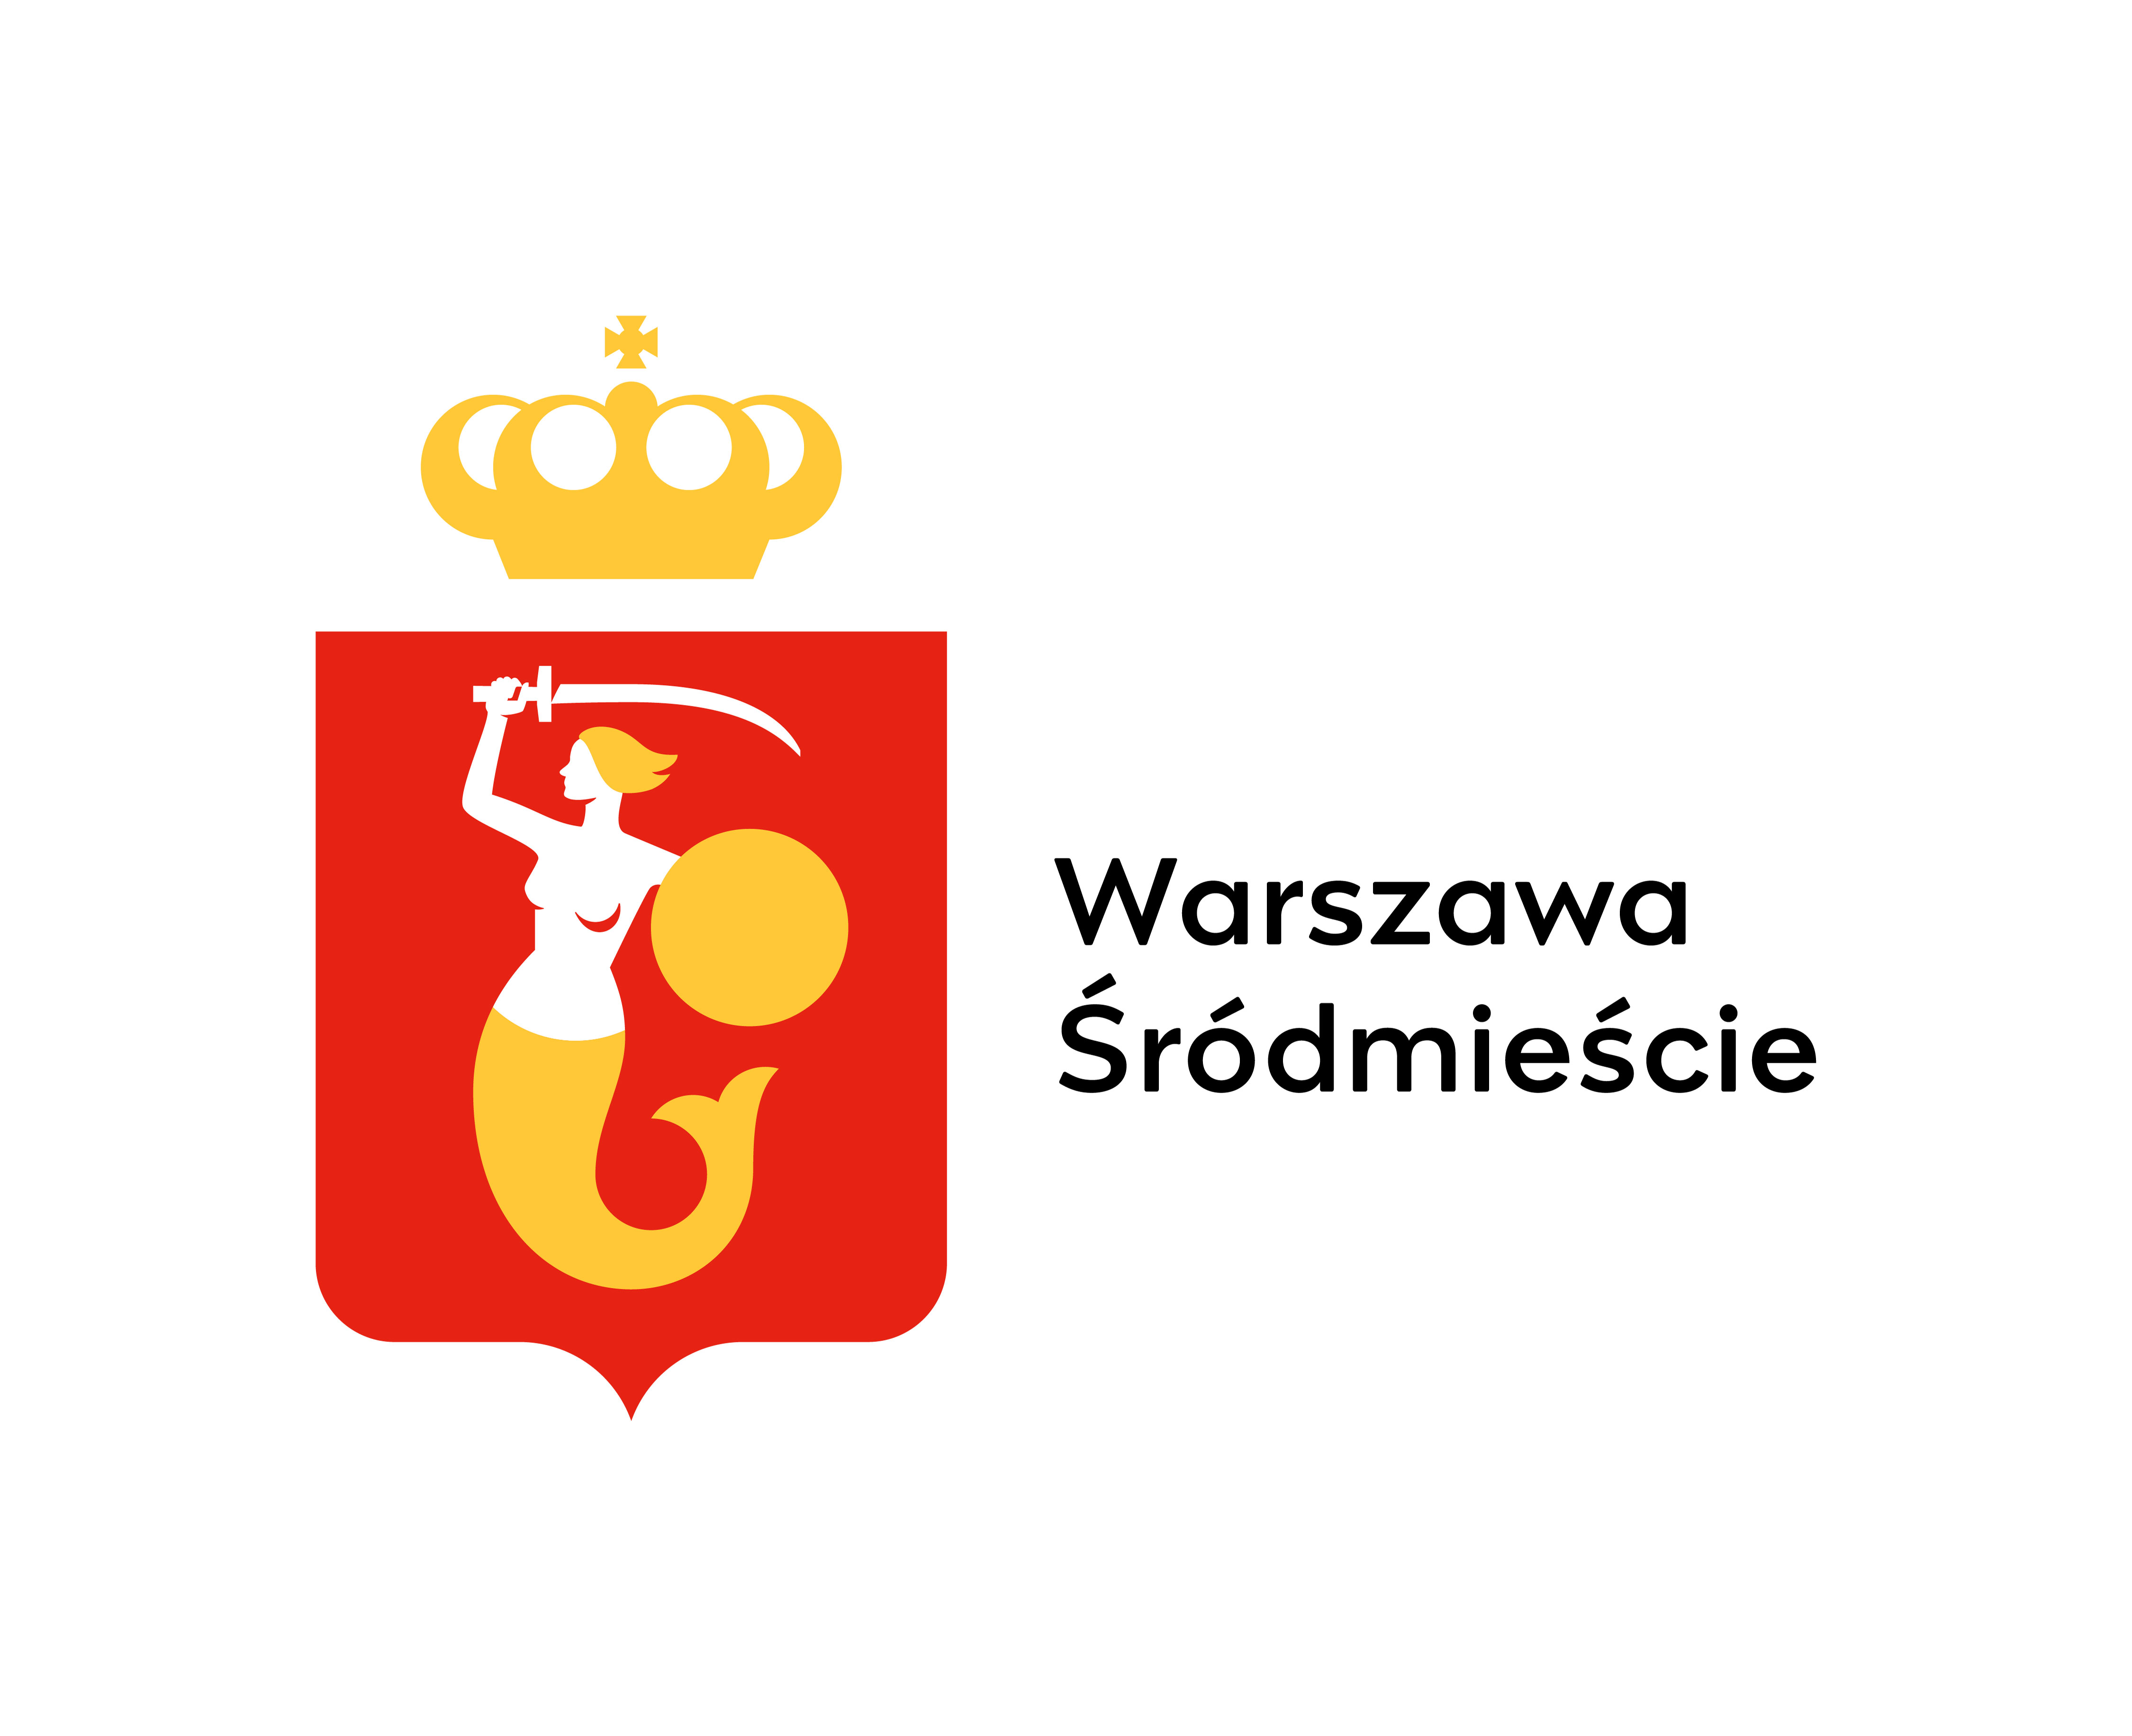 Warszawa-Śródmieście district